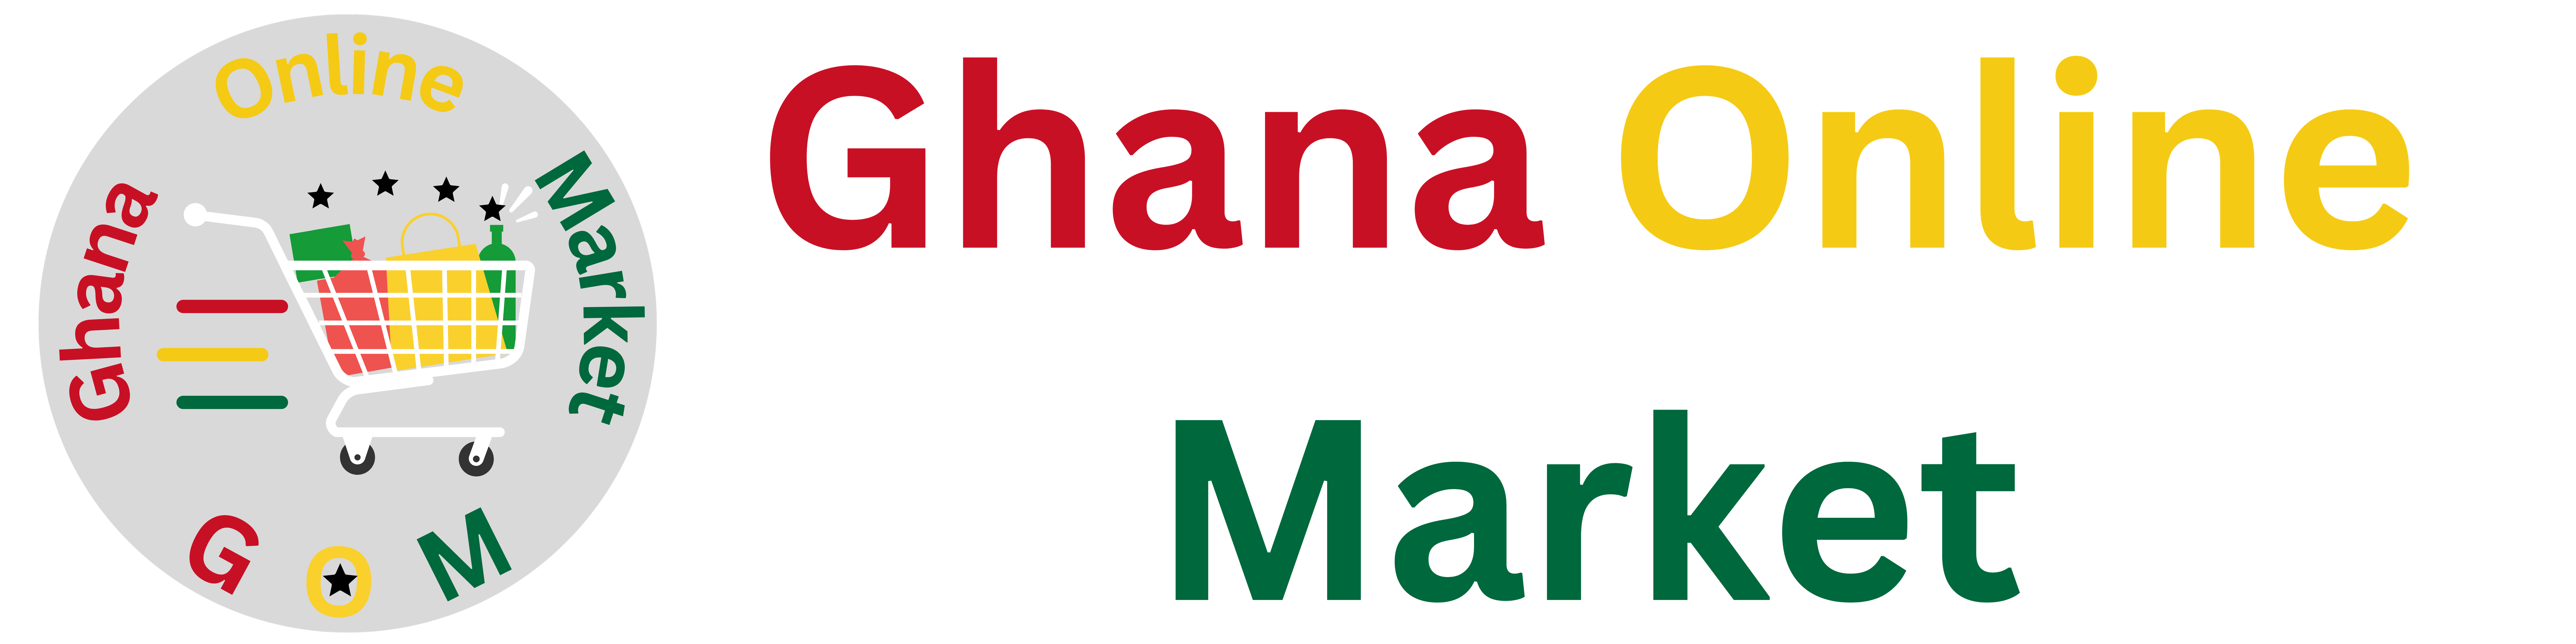 Ghana Online Market